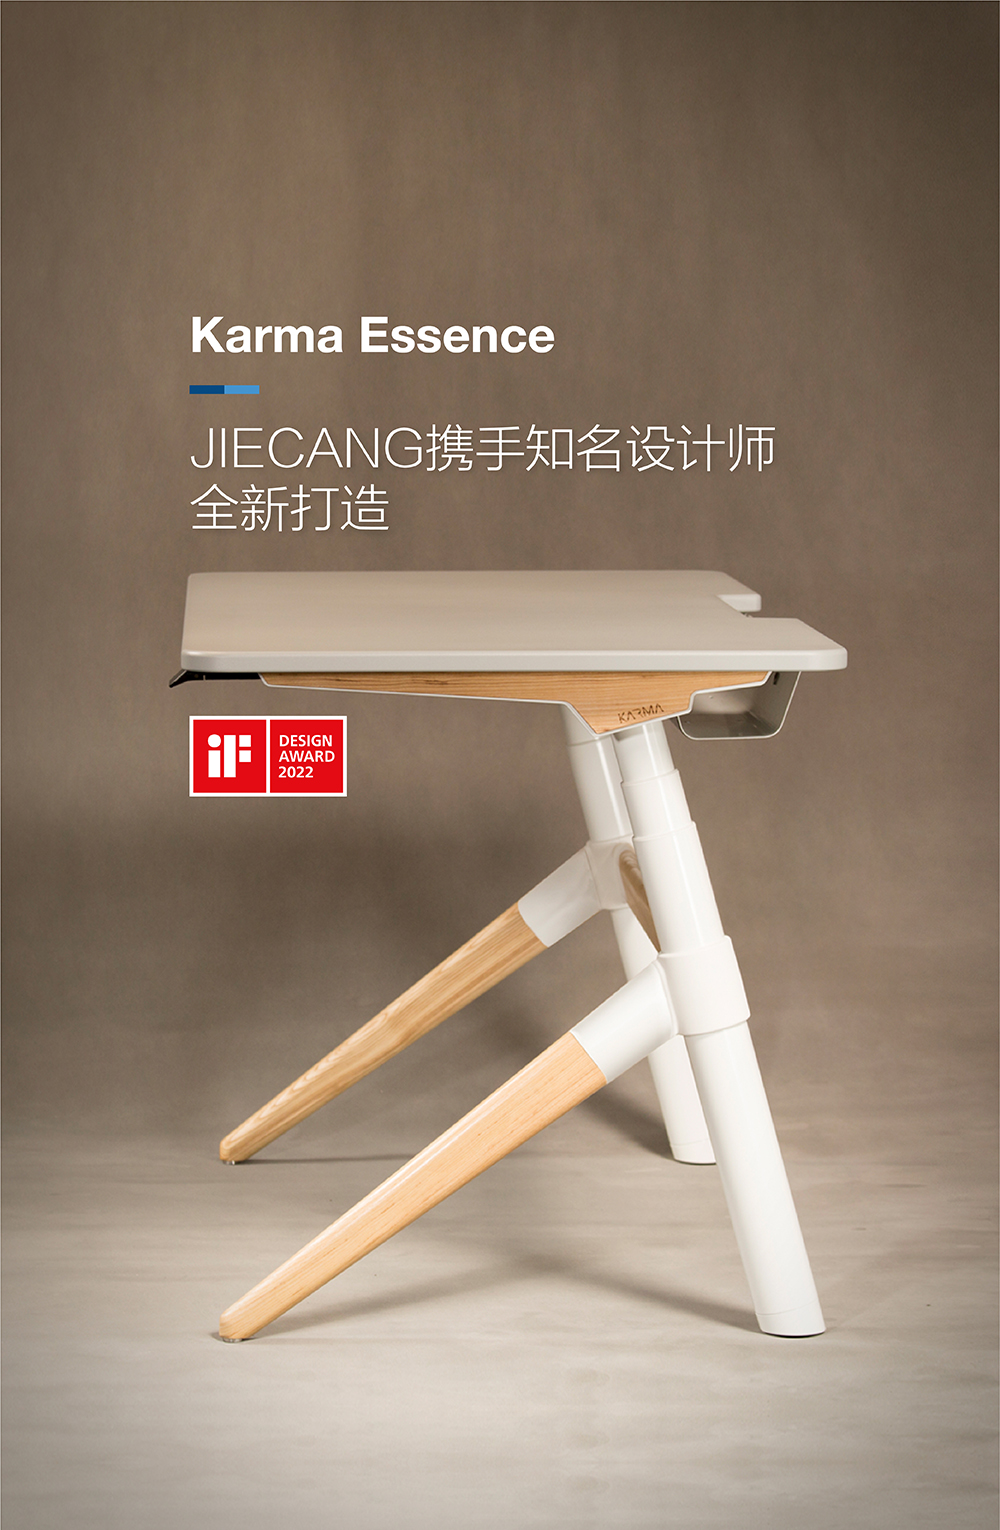 Karma Essence-banner-中文竖版